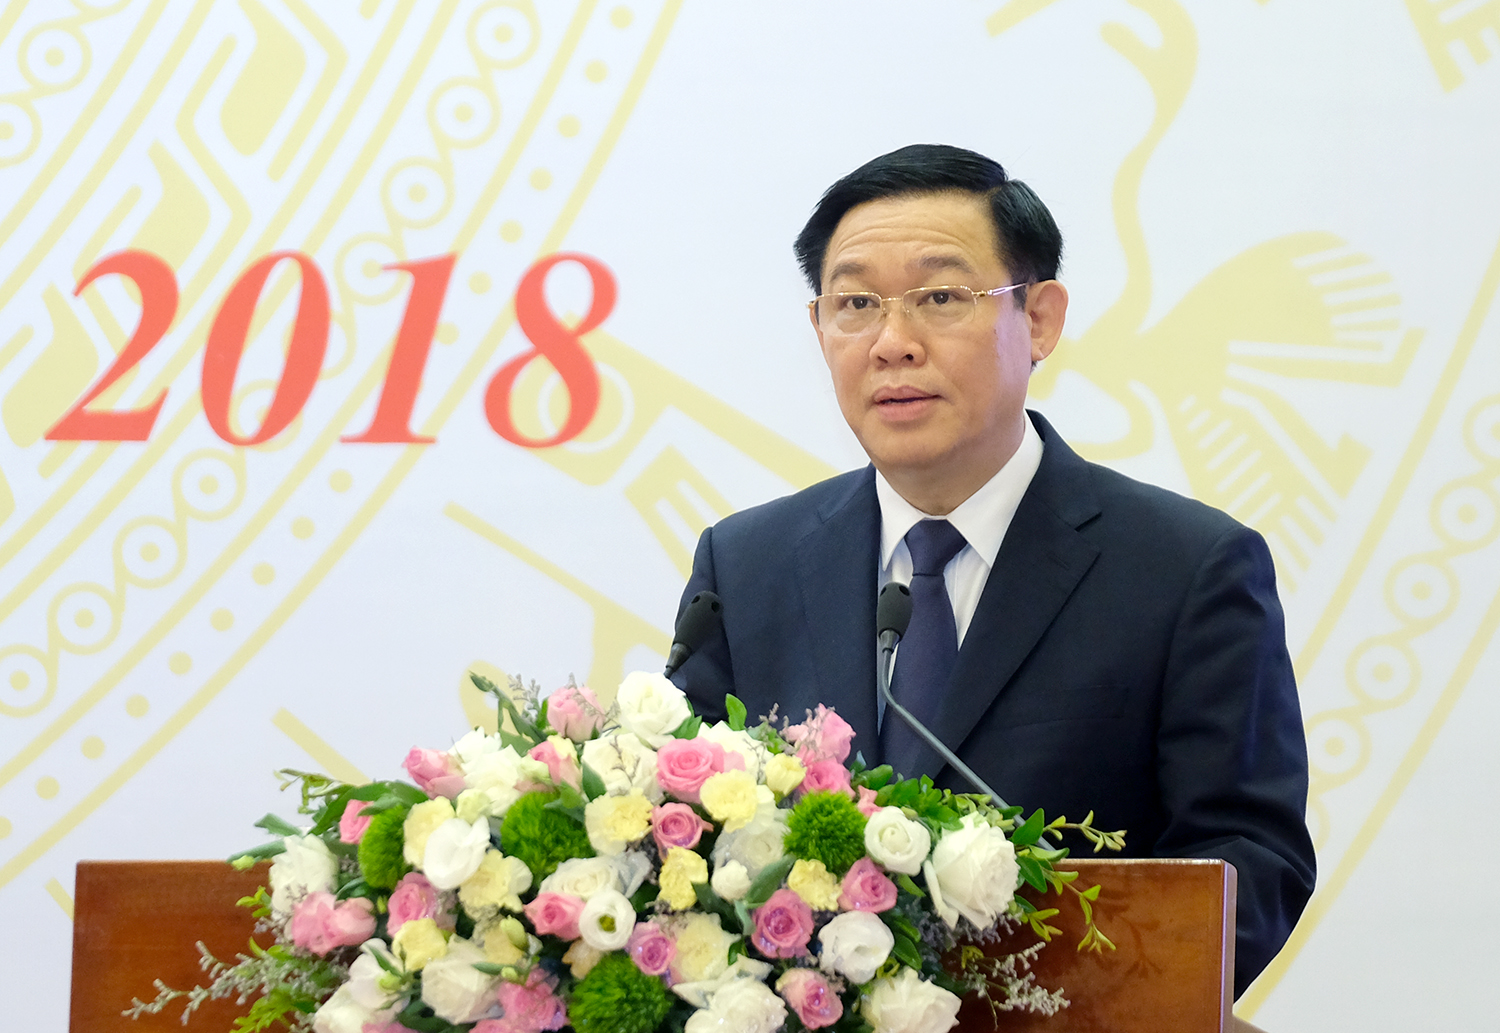  Phó Thủ tướng Vương Đình Huệ phát biểu tại Hội nghị. Ảnh: VGP/Quang Hiếu